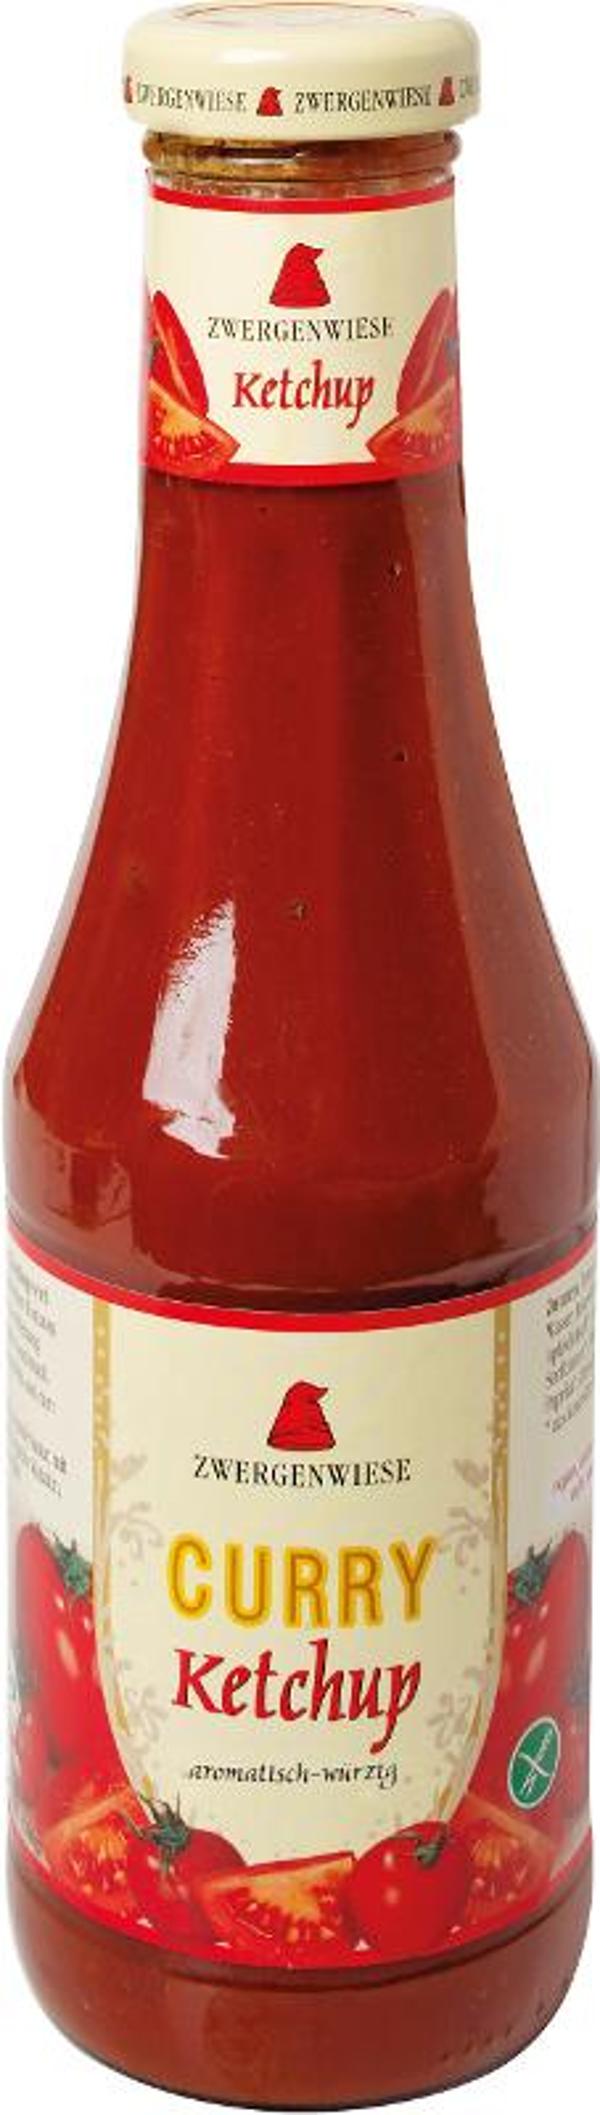 Produktfoto zu Curry Ketchup, 500ml